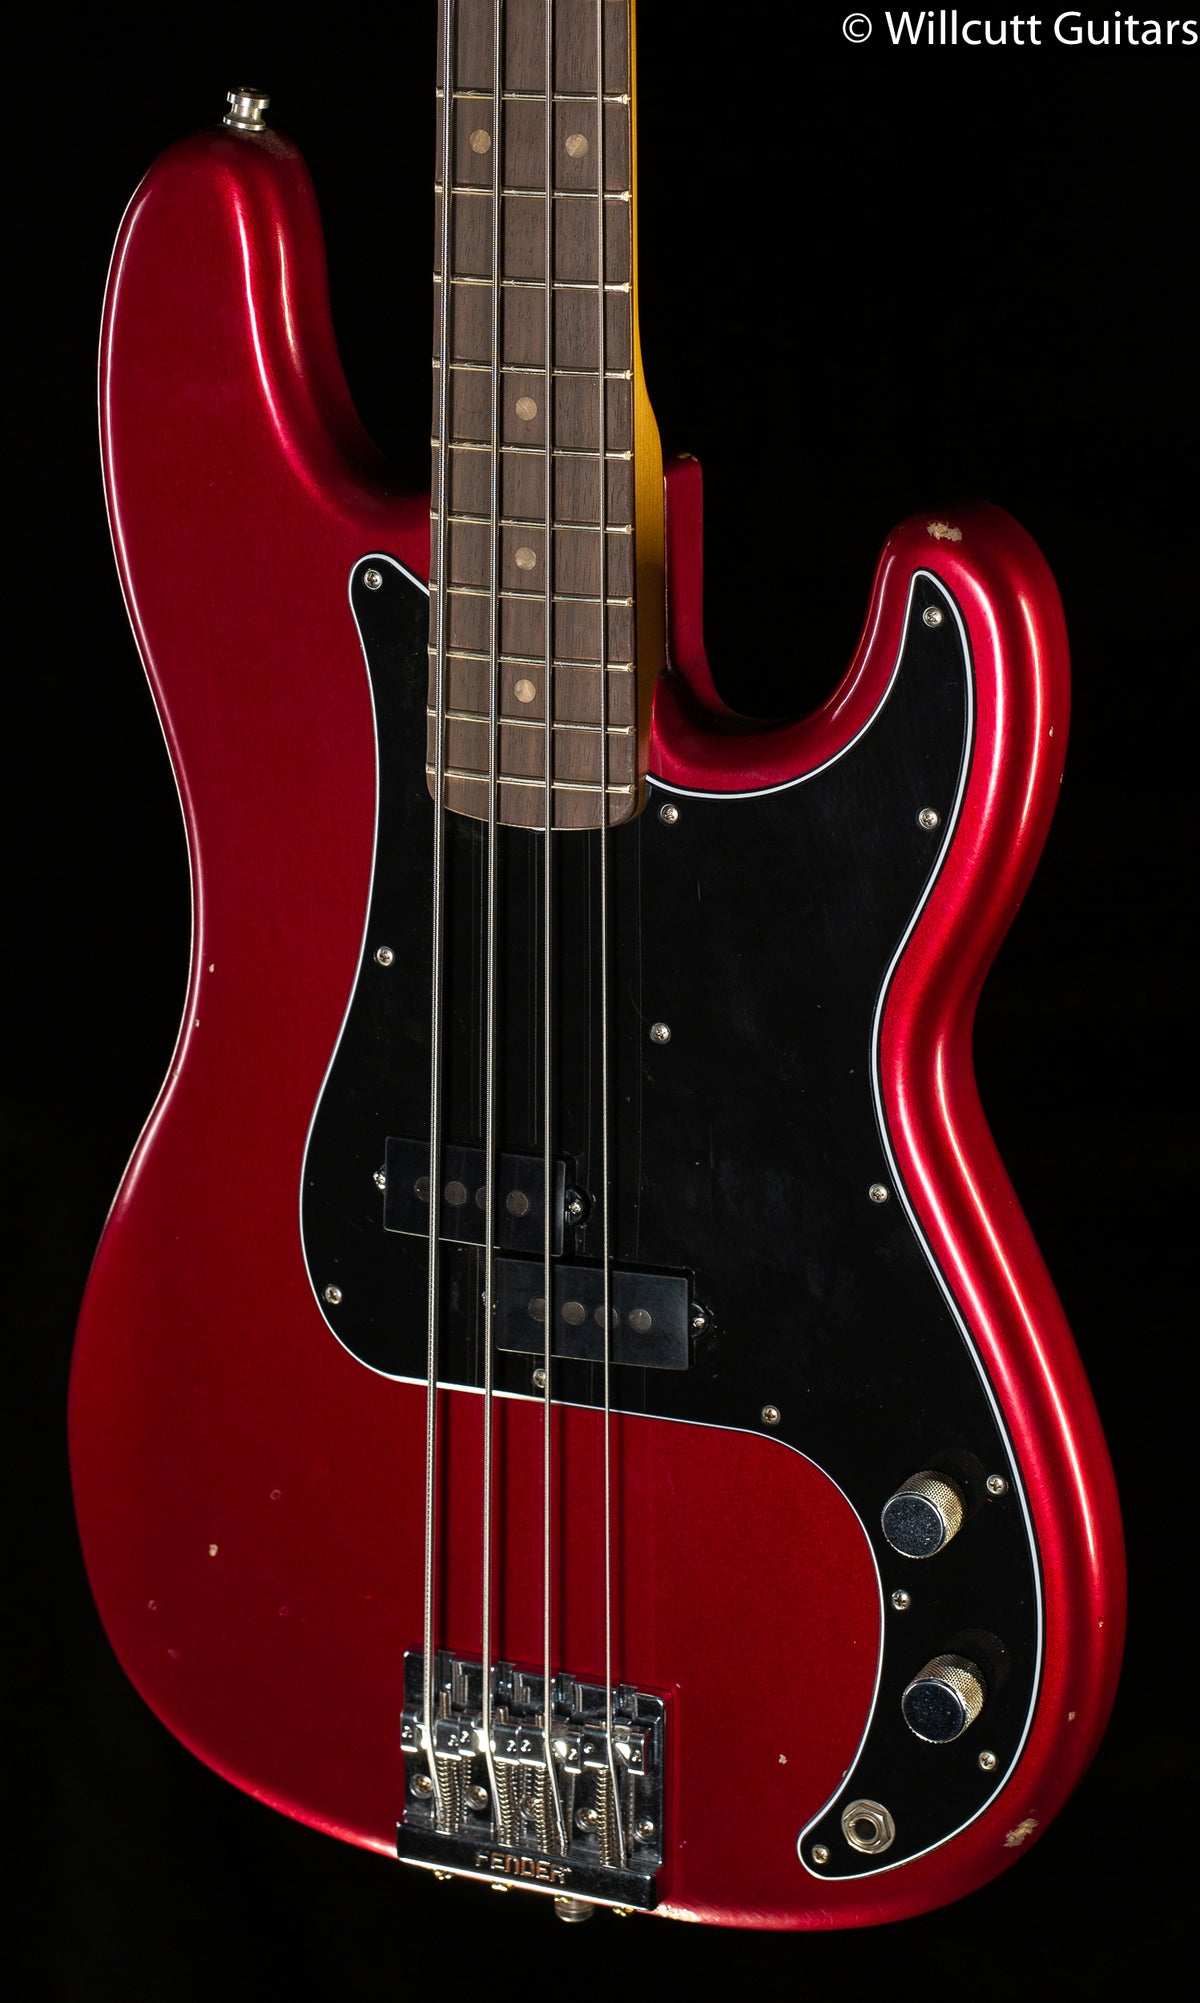 Fender Nate Mendel P Bass Candy Apple Red Bass Guitar - Willcutt